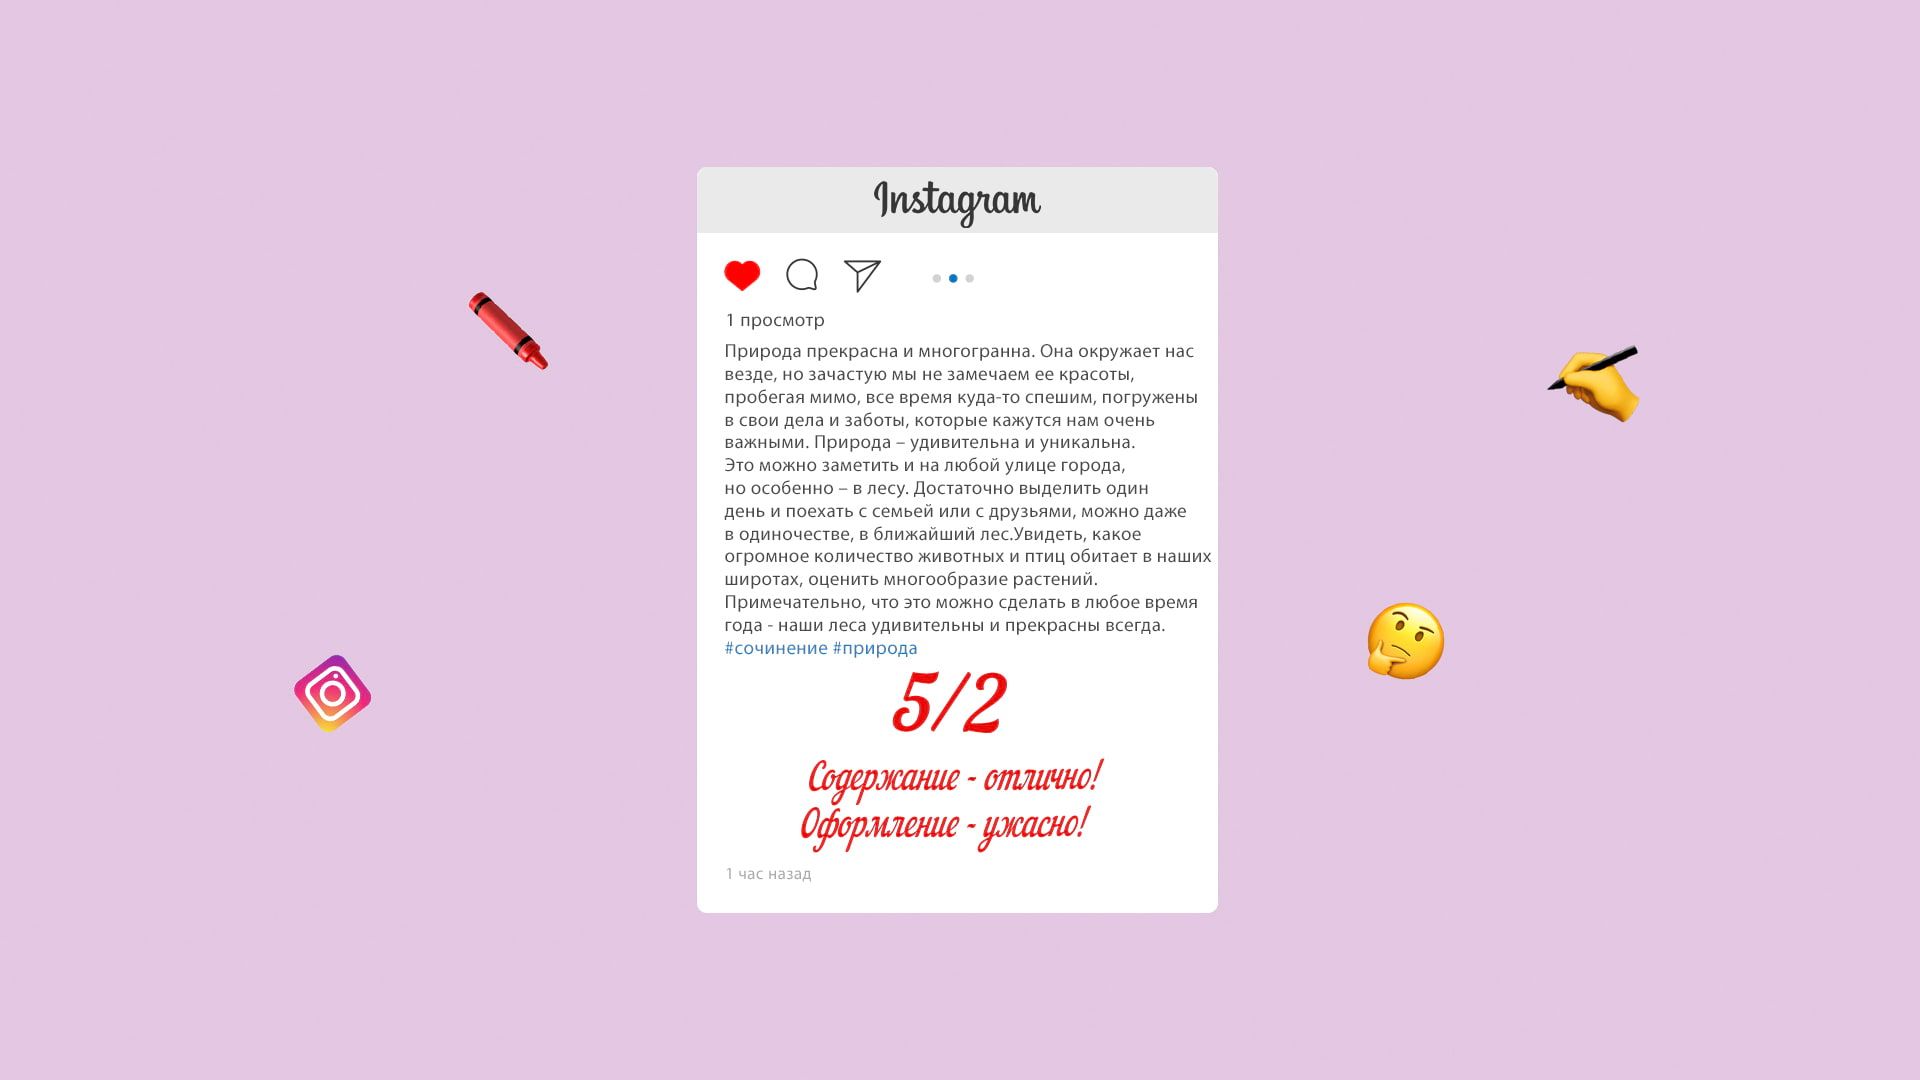 Шапка профиля в Инстаграме**: правила заполнения и интересные фишки